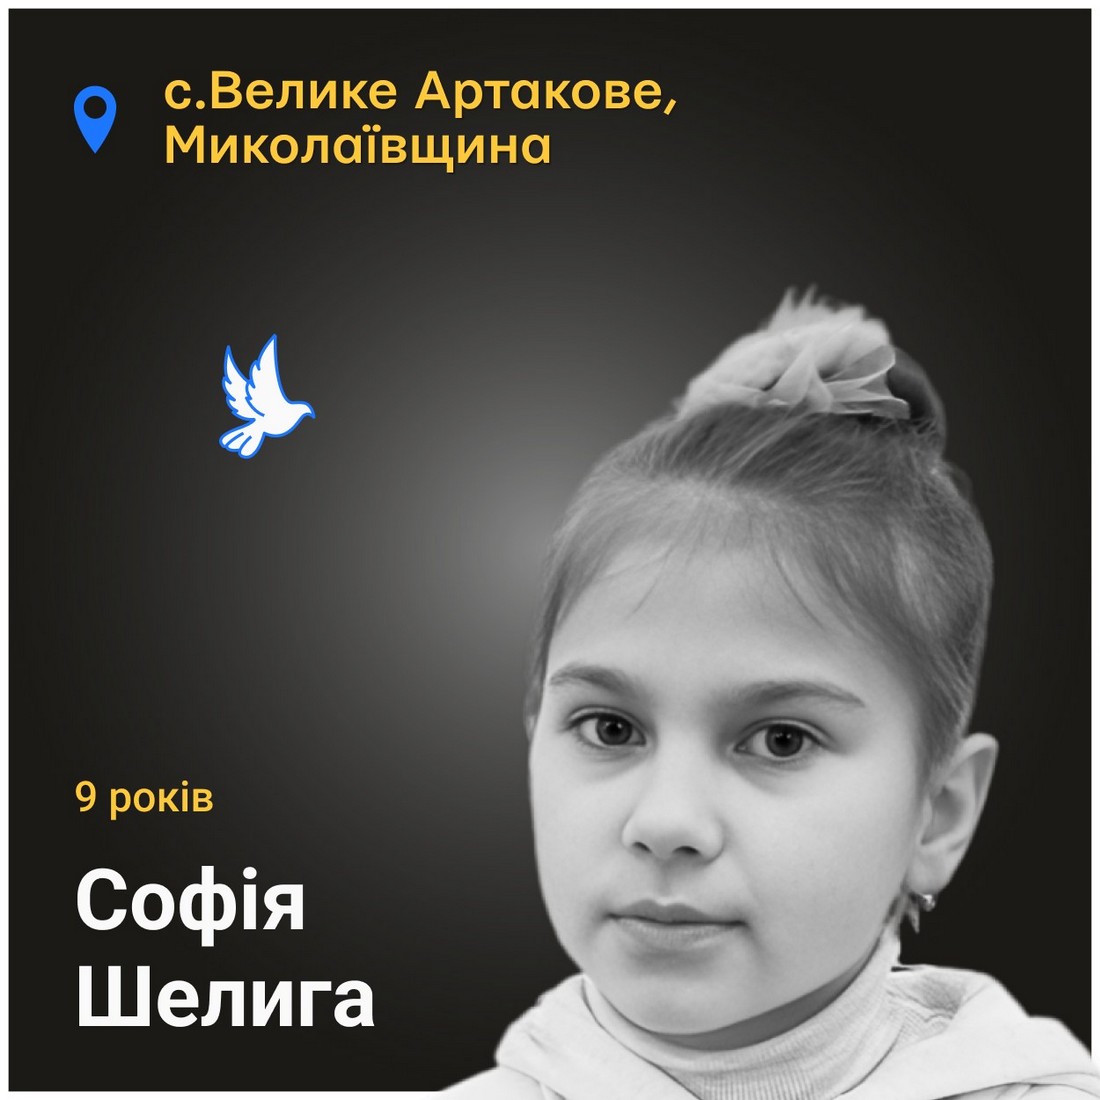 Меморіал: вбиті росією. Софія Шелига, 9 років, Миколаївщина, травень